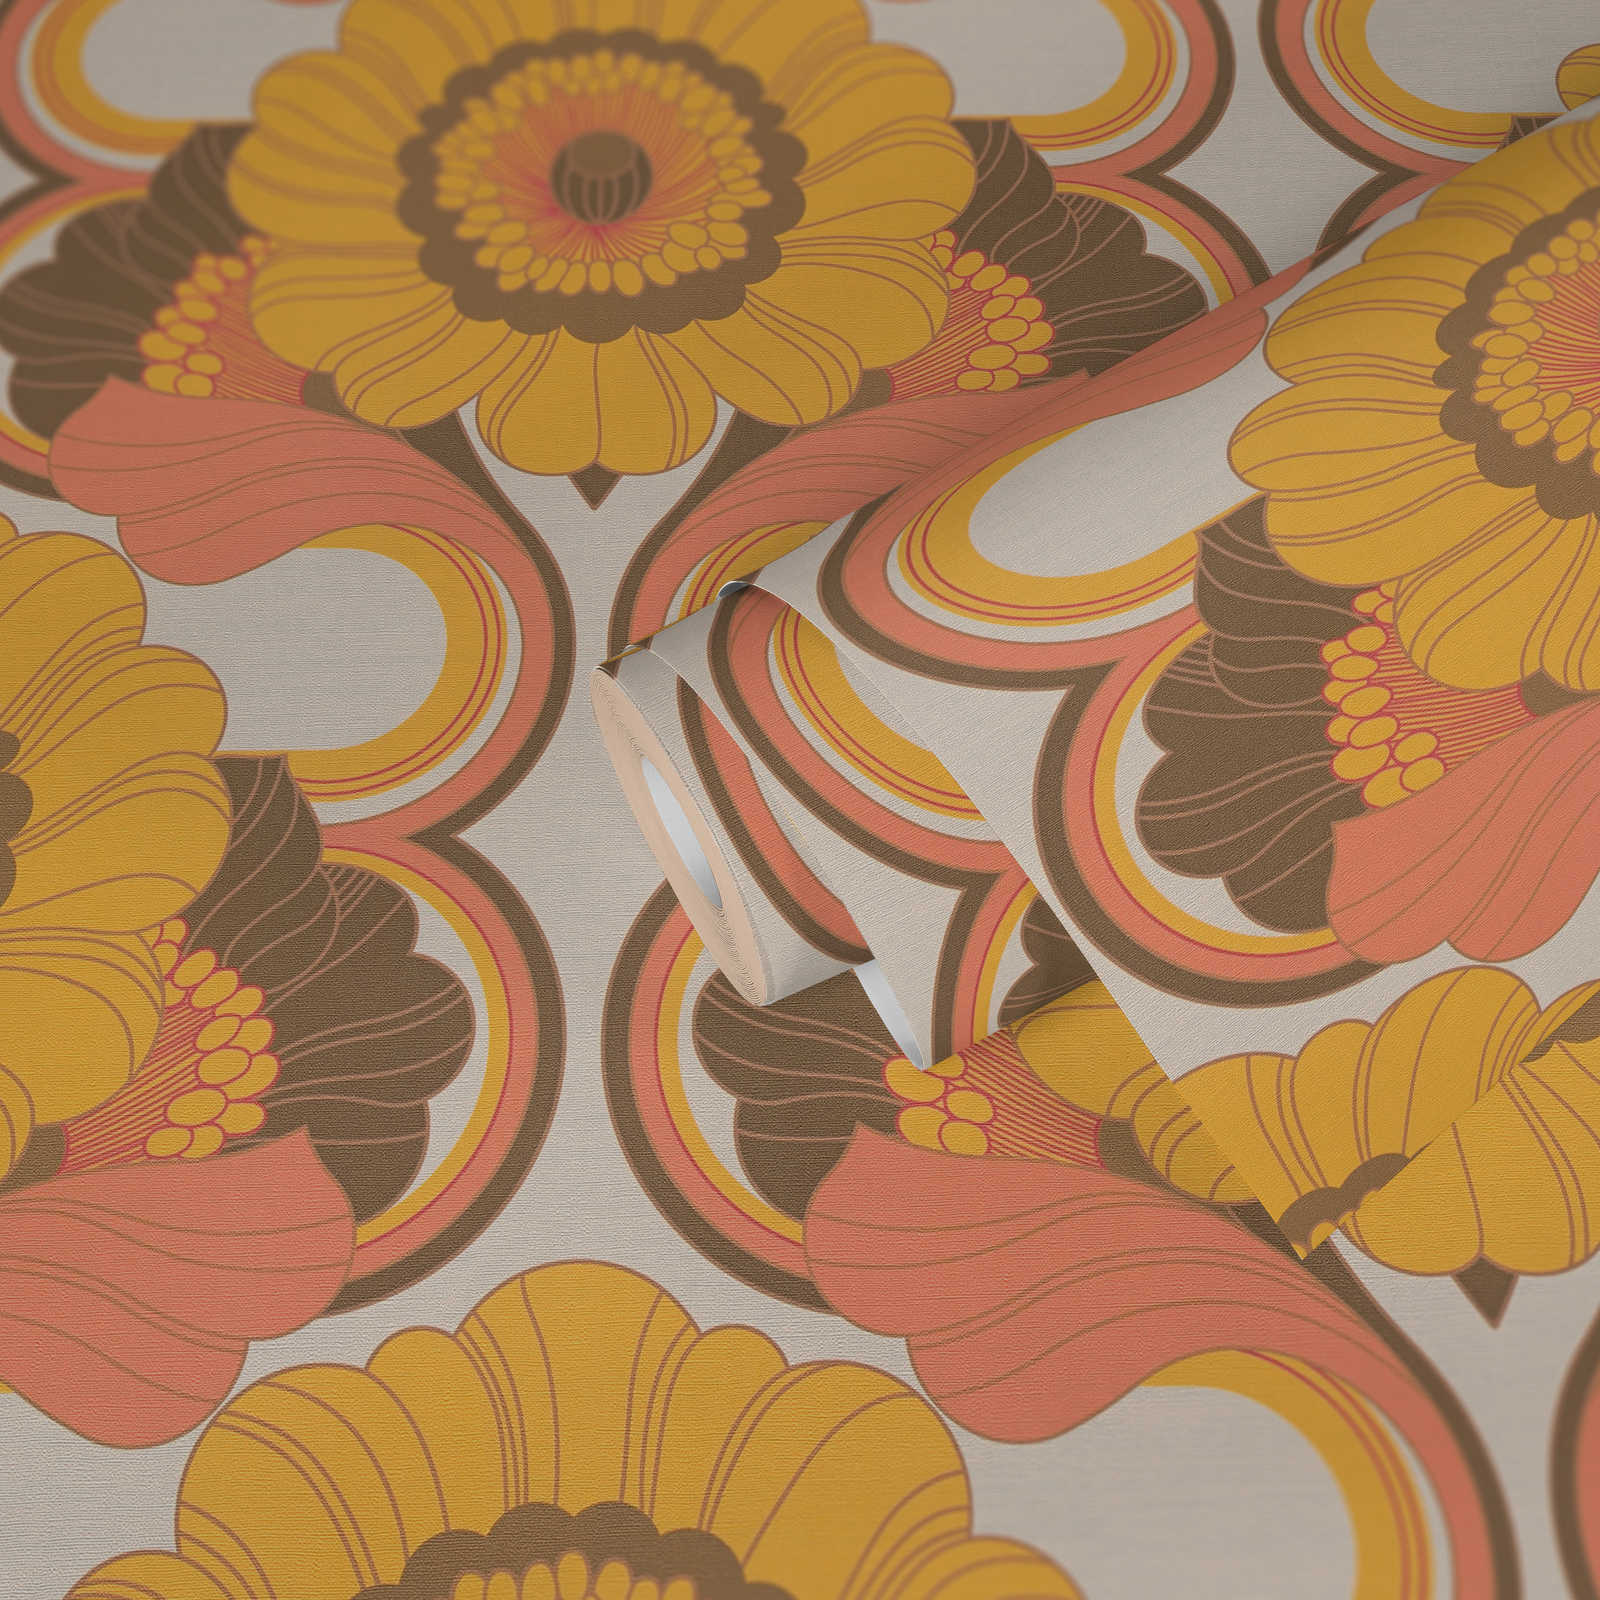             papier peint en papier floral rétro avec motif floral aux couleurs chaudes - marron, jaune, orange
        